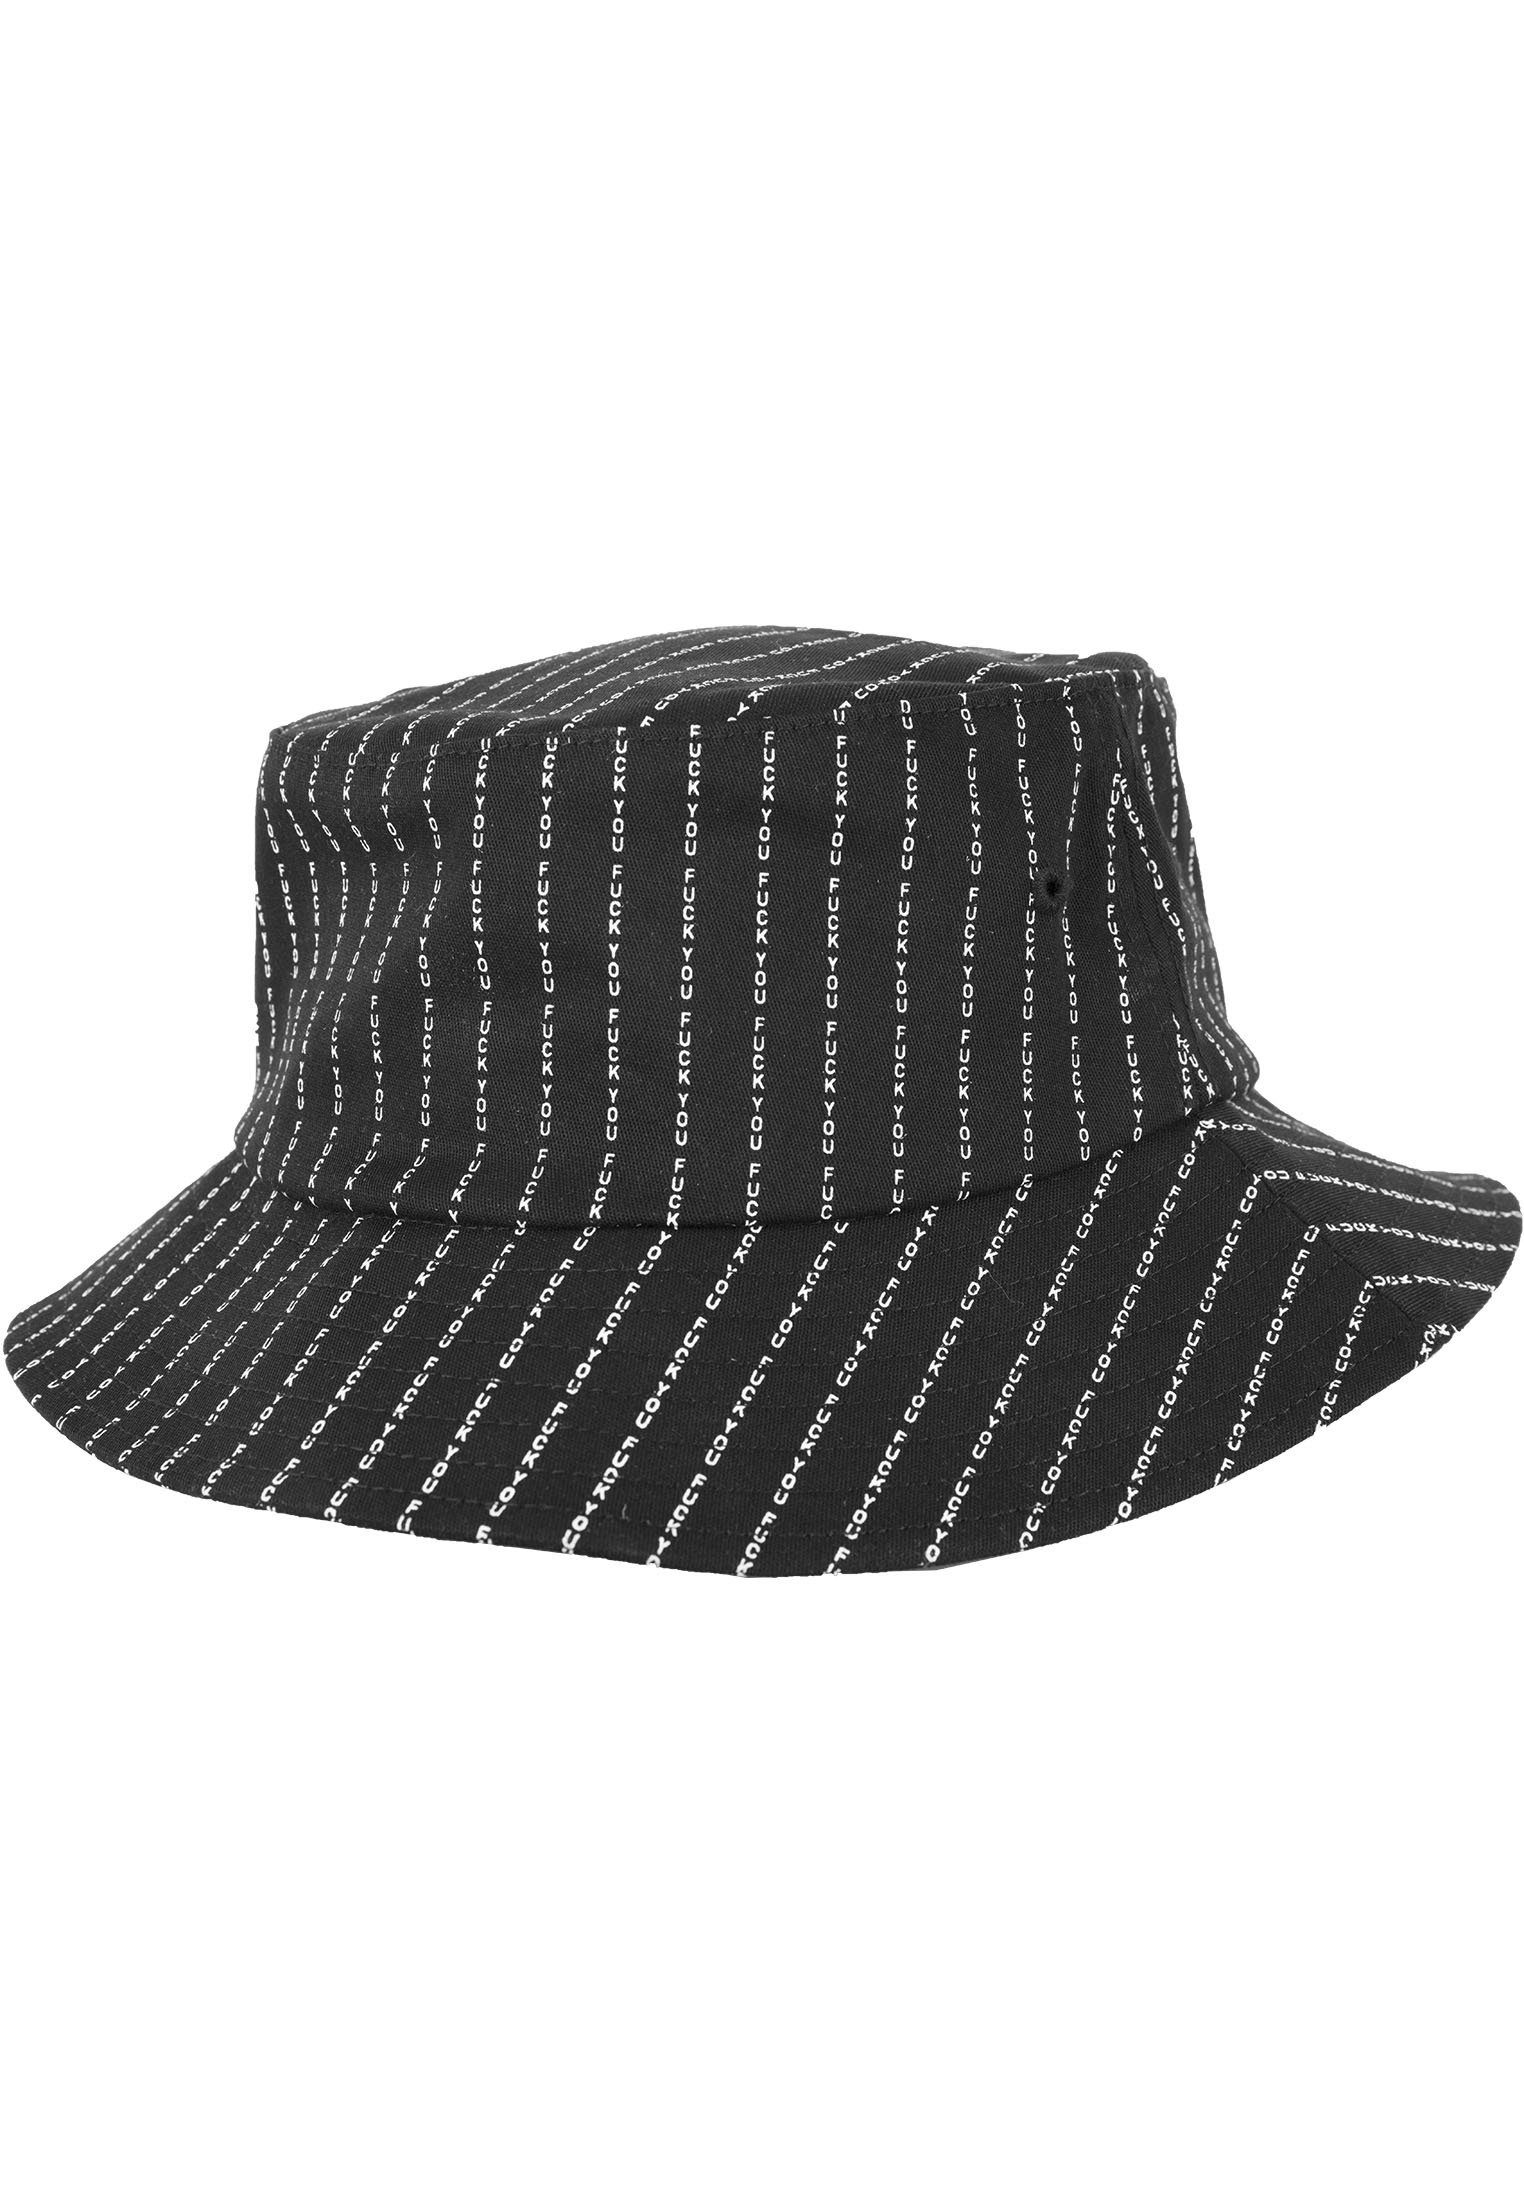 MisterTee Flex Cap Herren F*** Y** Bucket Hat | Flex Caps